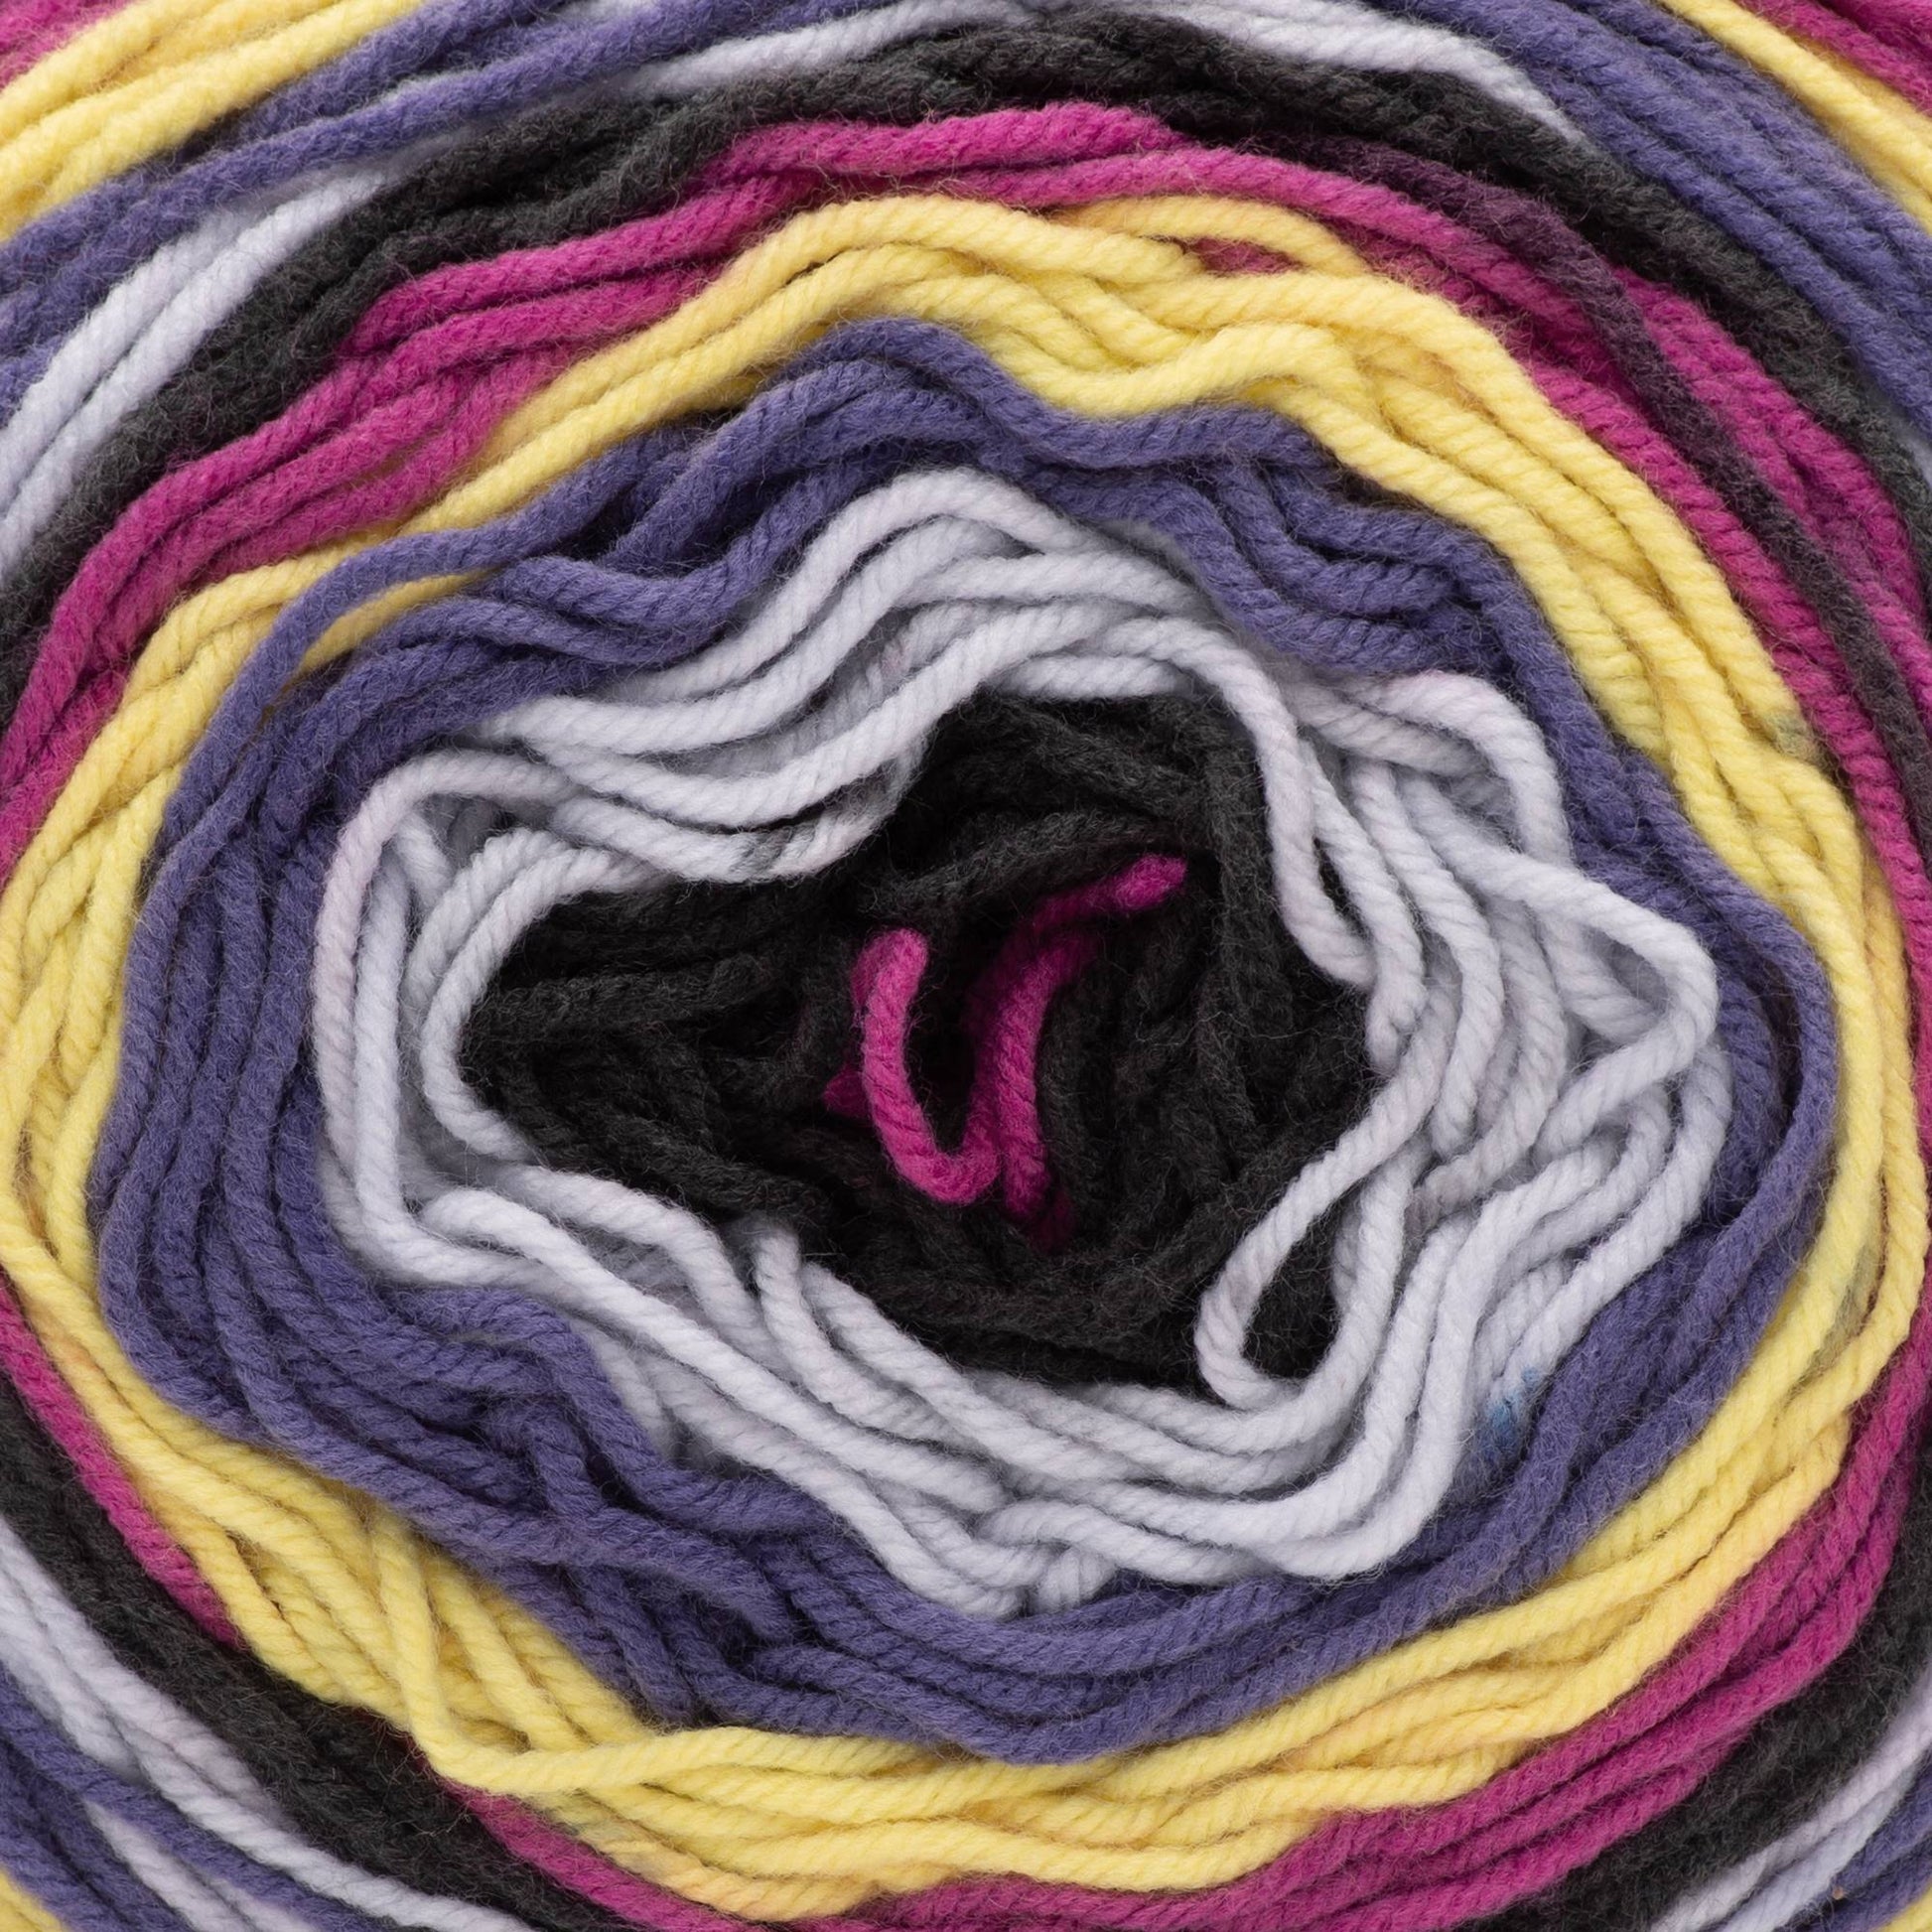  Caron Big Cakes Self Striping Yarn ~ 603 yd/551 m / 10.5oz/300  g Each (Toffee Brickle)